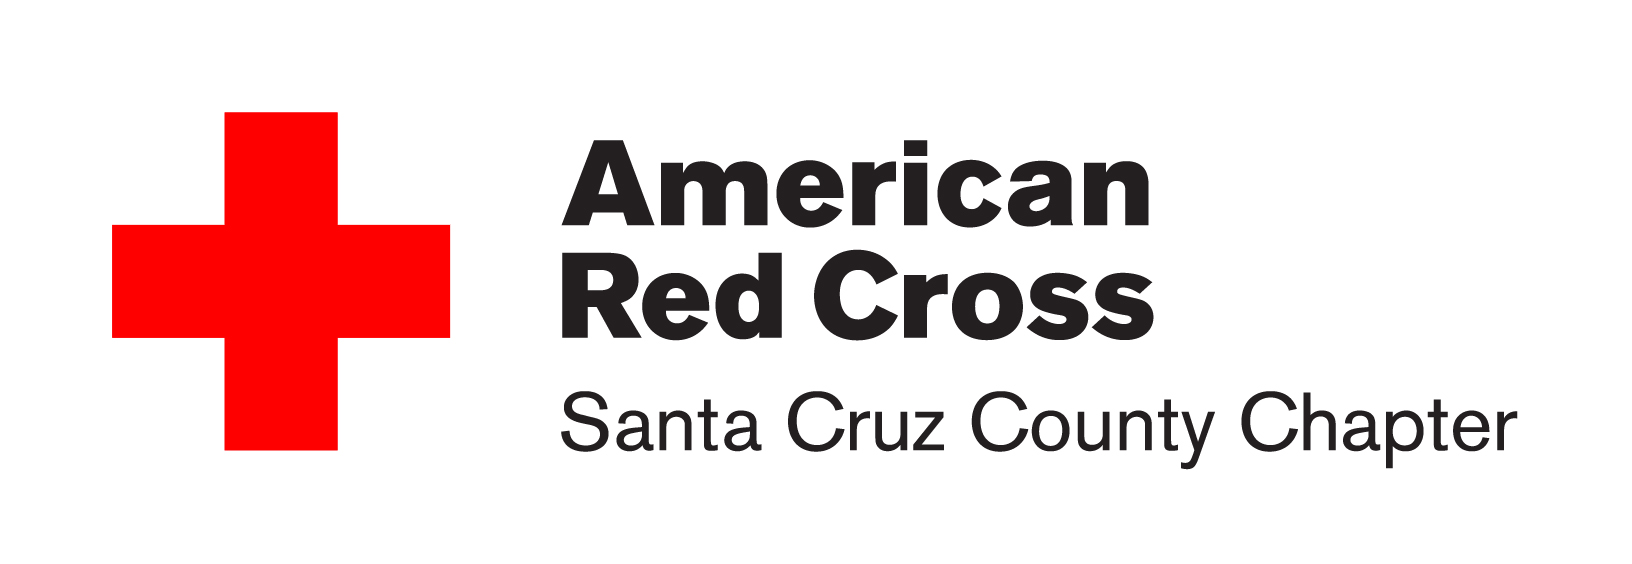 Cross service. Красный крест. Американский красный крест. Red Cross эмблема. Картинка красный крест медицинский.